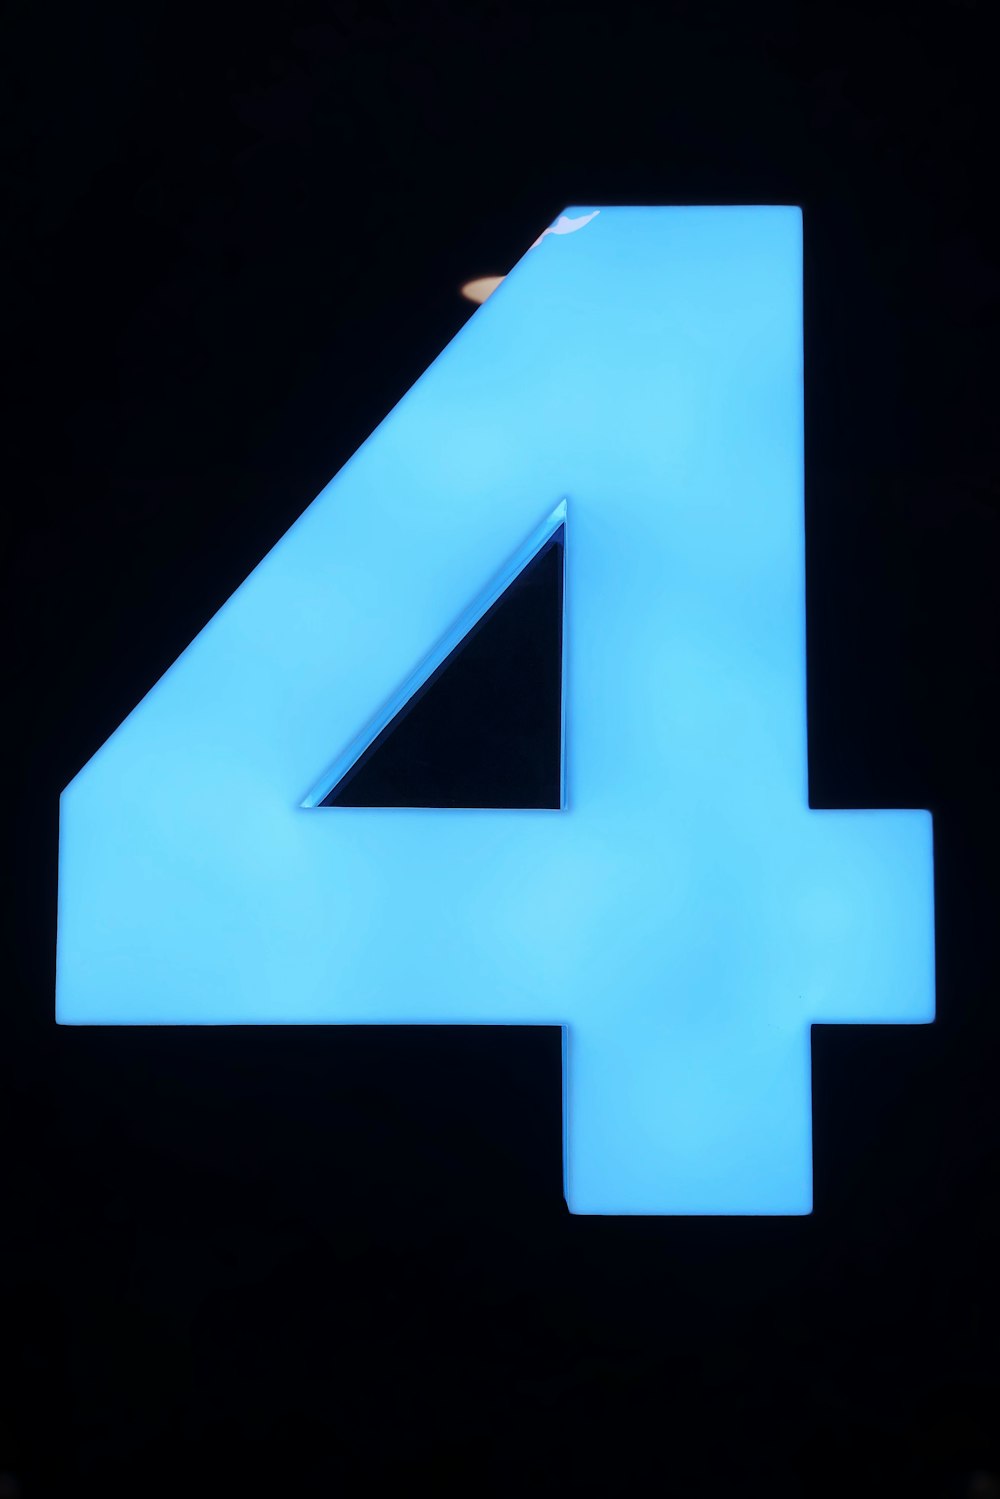 blue letter x on black background